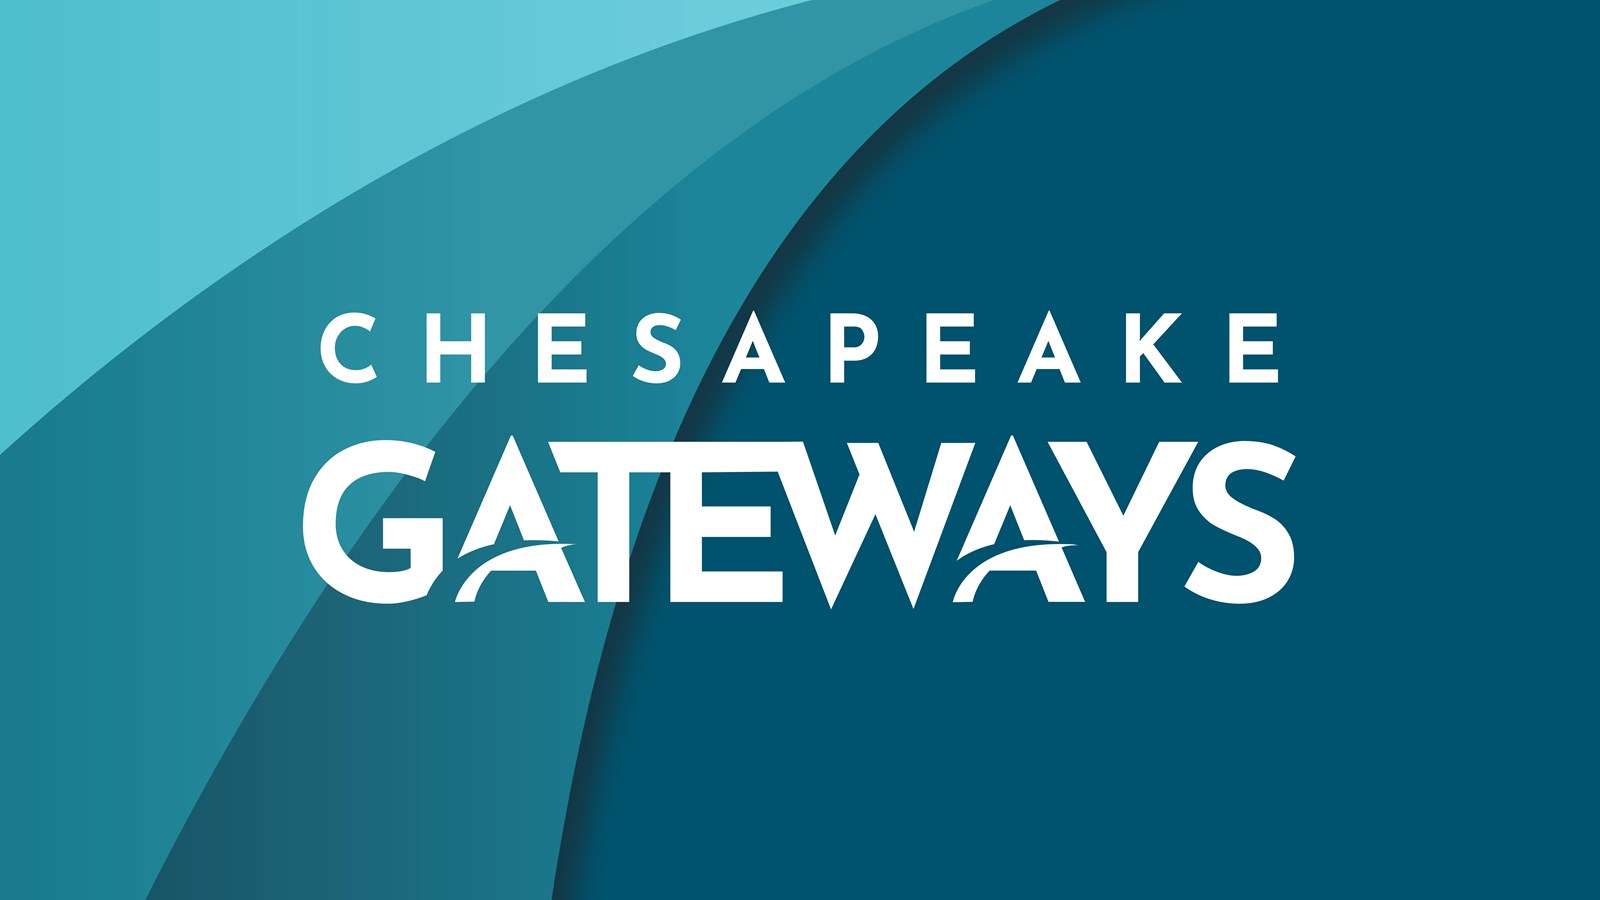 Chesapeake Gateways written in white on a blue background.